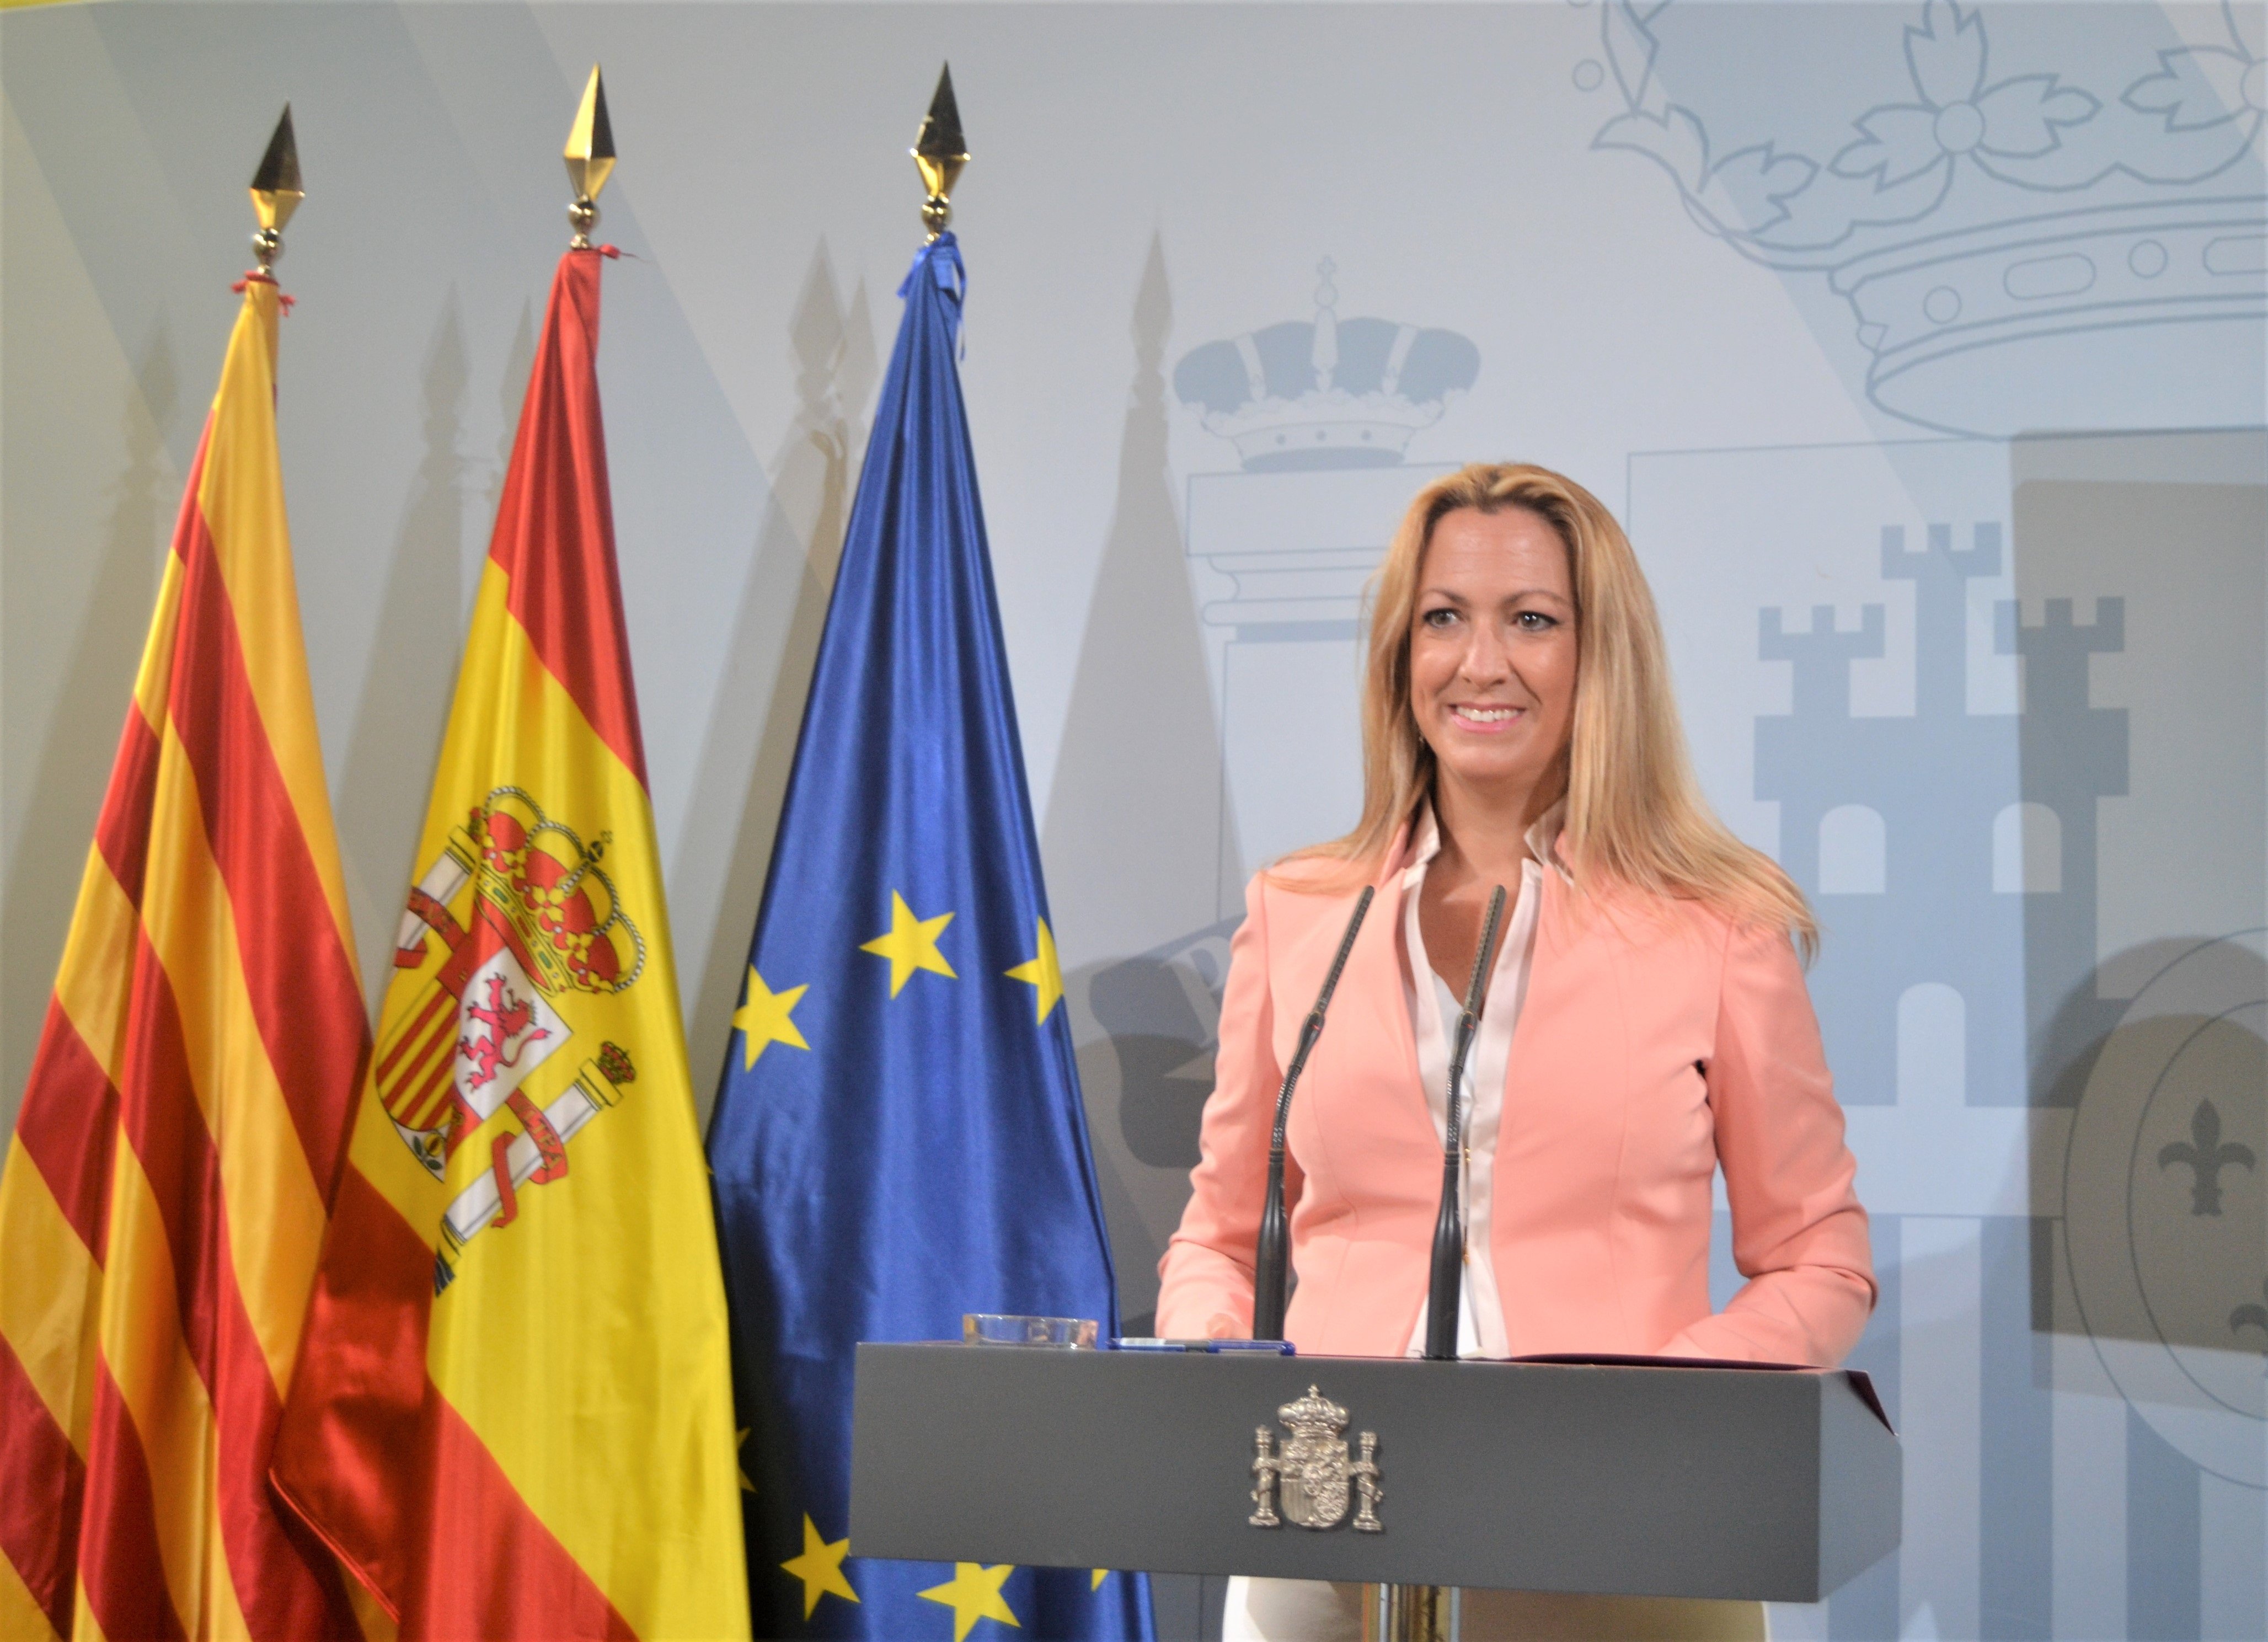 La delegada del govern espanyol a Catalunya defensa que el diàleg està donant fruits